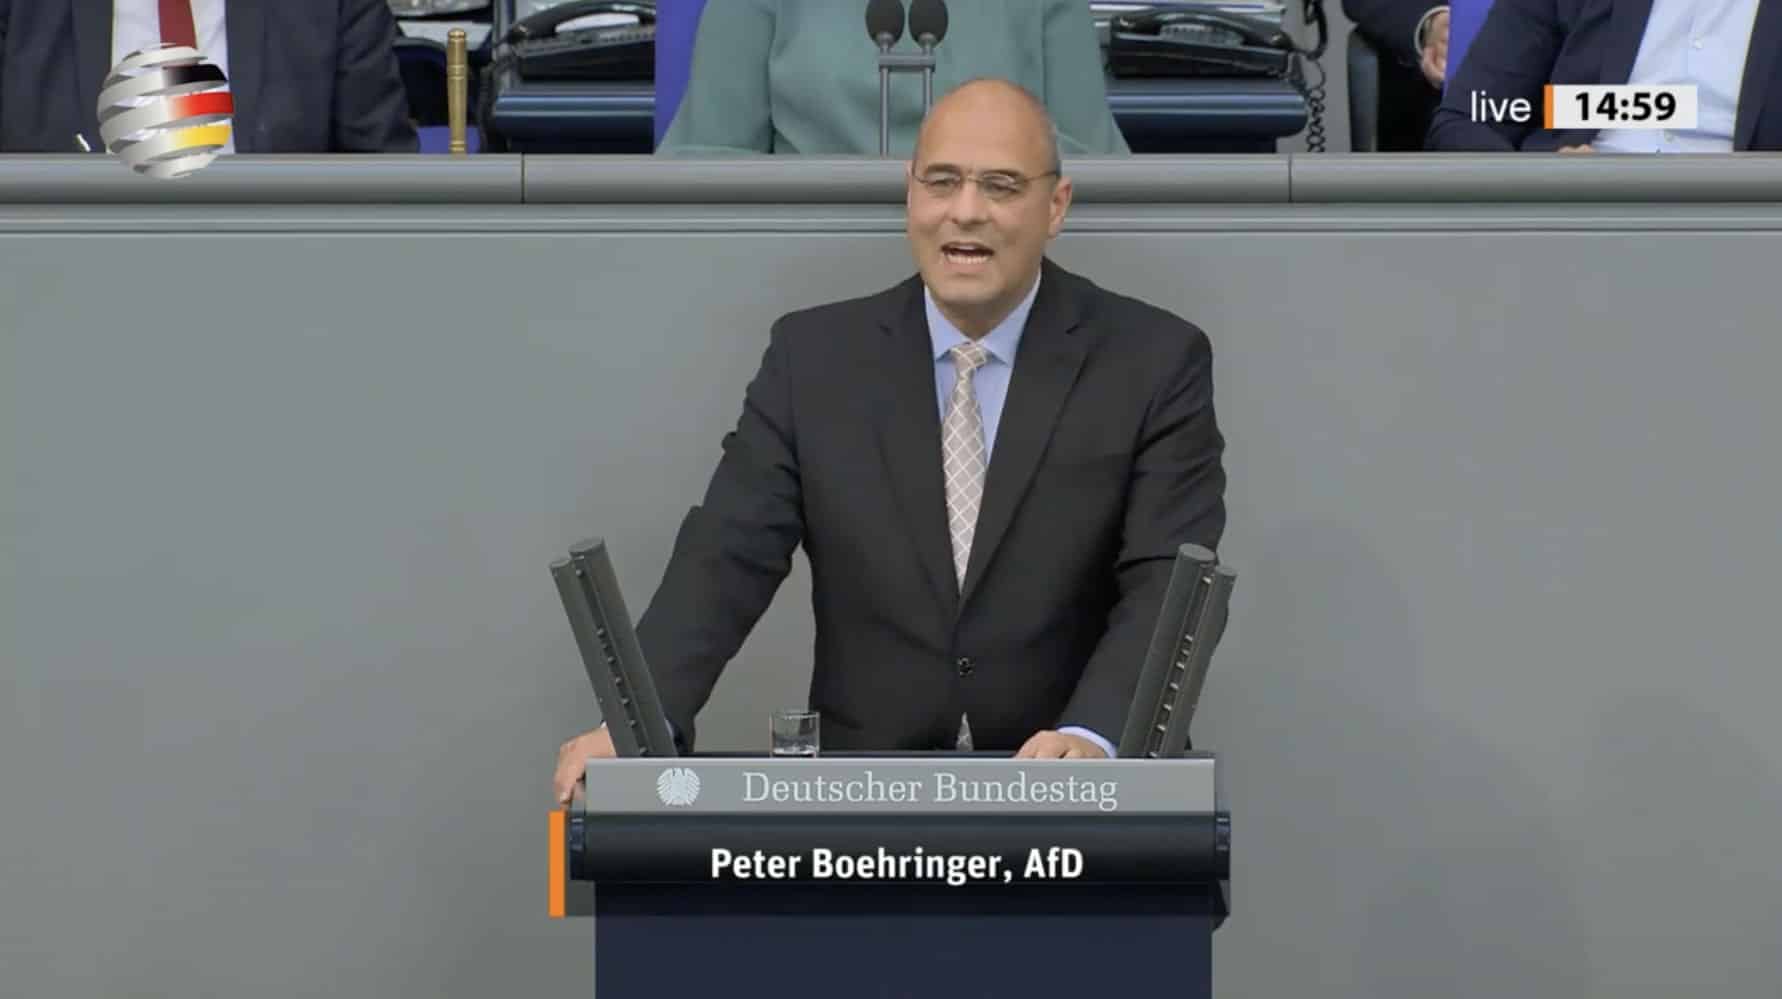 peter-boehringer-(afd):-„fuehren-sie-endlich-eine-politische-agenda-ohne-ideologie-zum-wohl-deutschlands-aus!